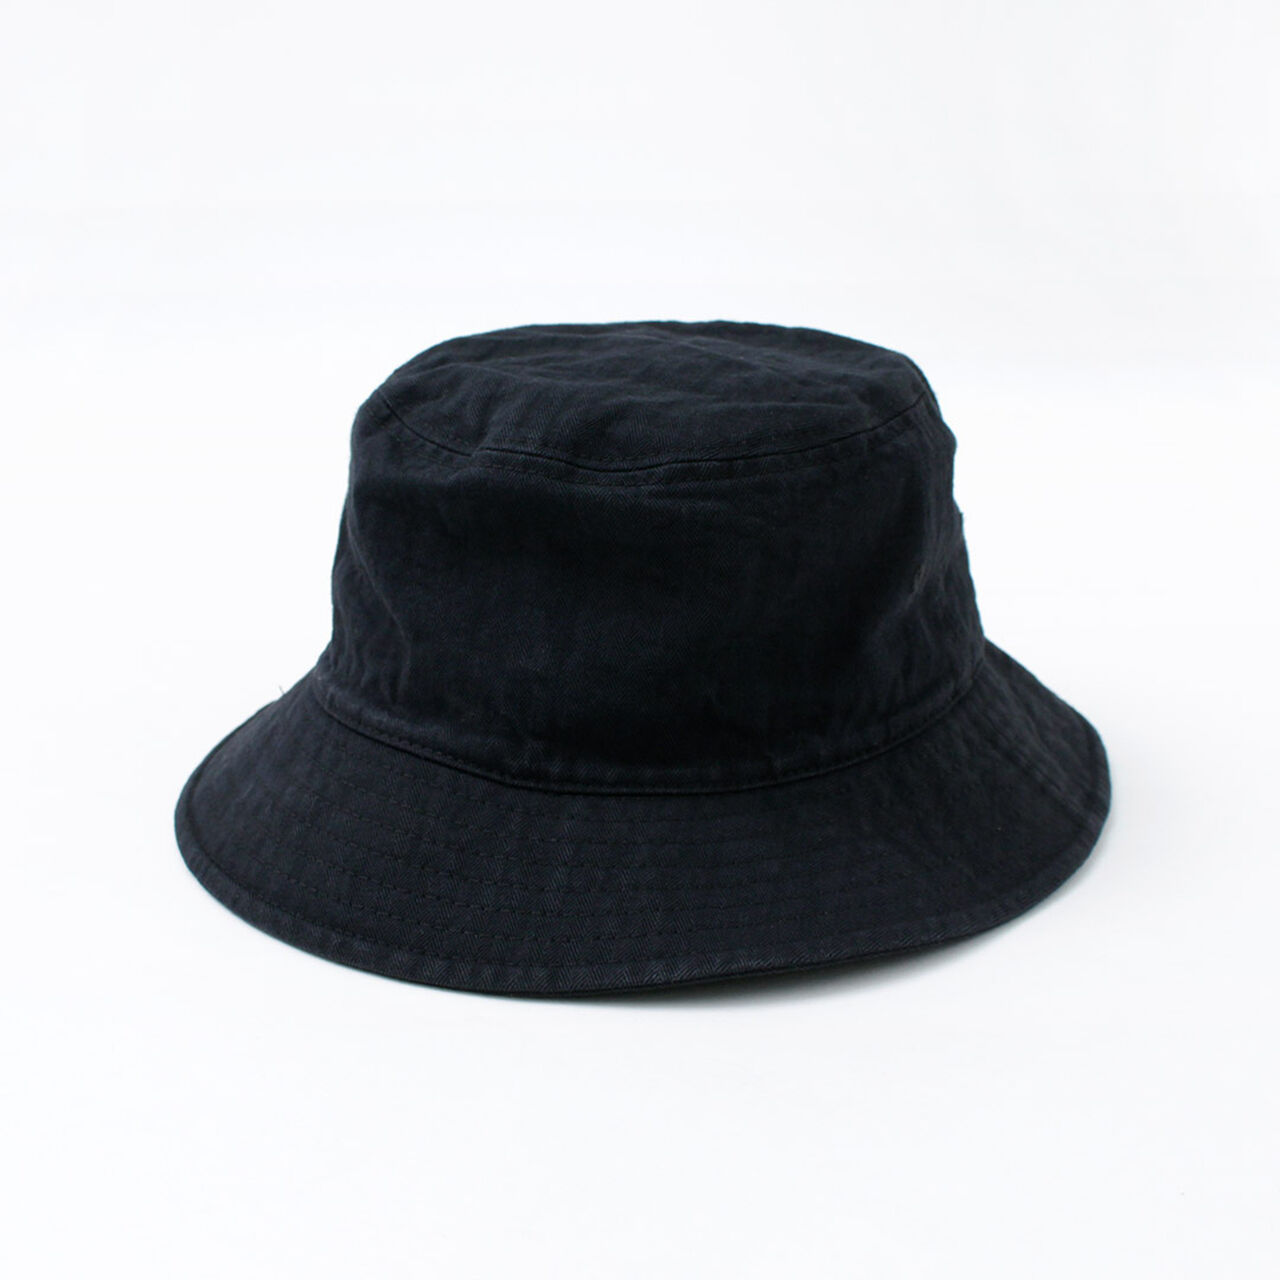 Bespoke Vintage Herringbone Bucket Hat,Black, large image number 0